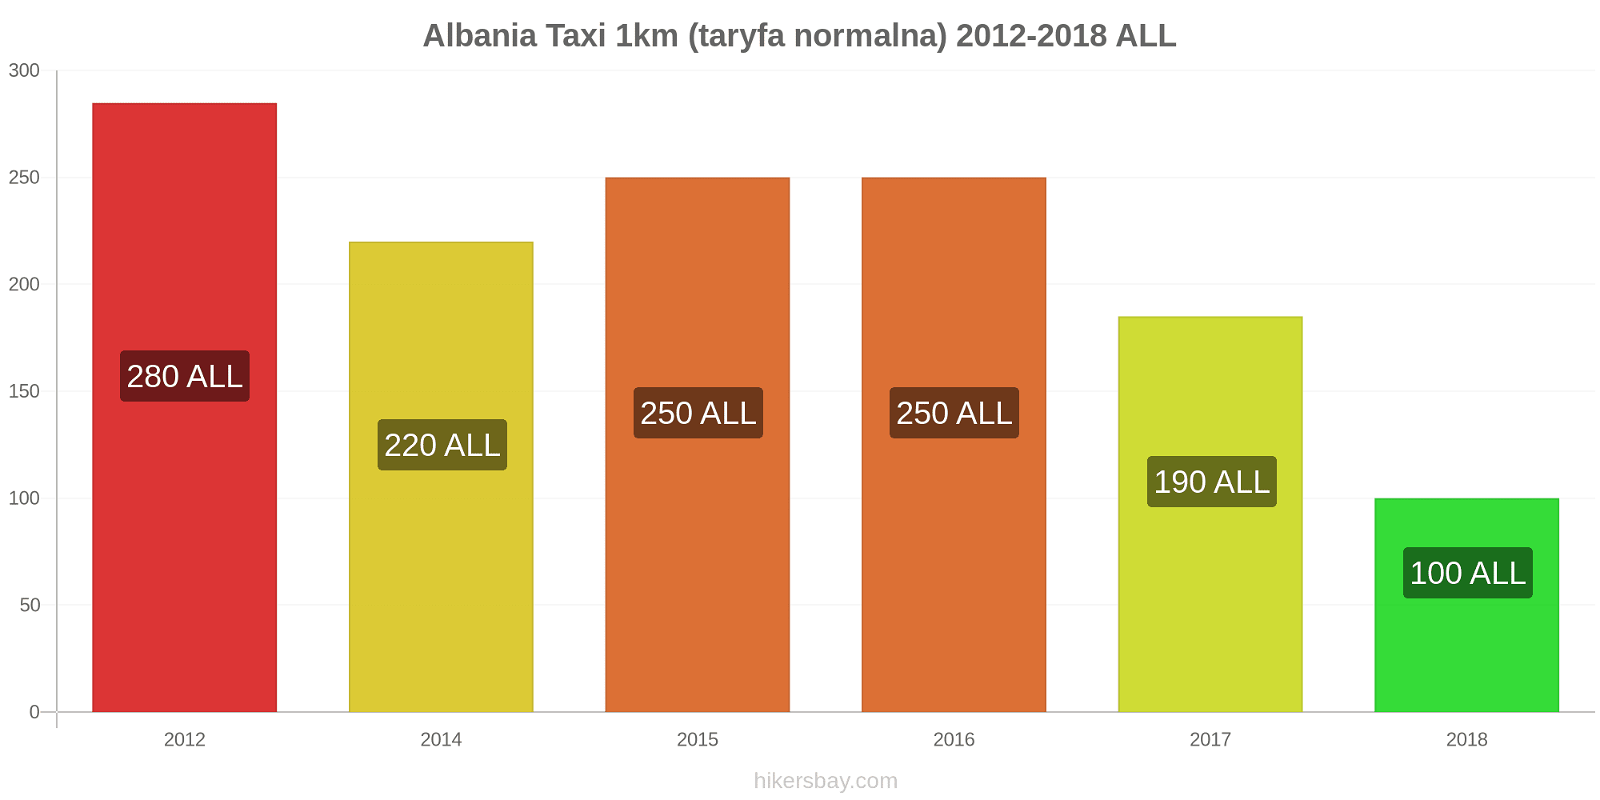 Albania zmiany cen Taxi 1km (taryfa normalna) hikersbay.com